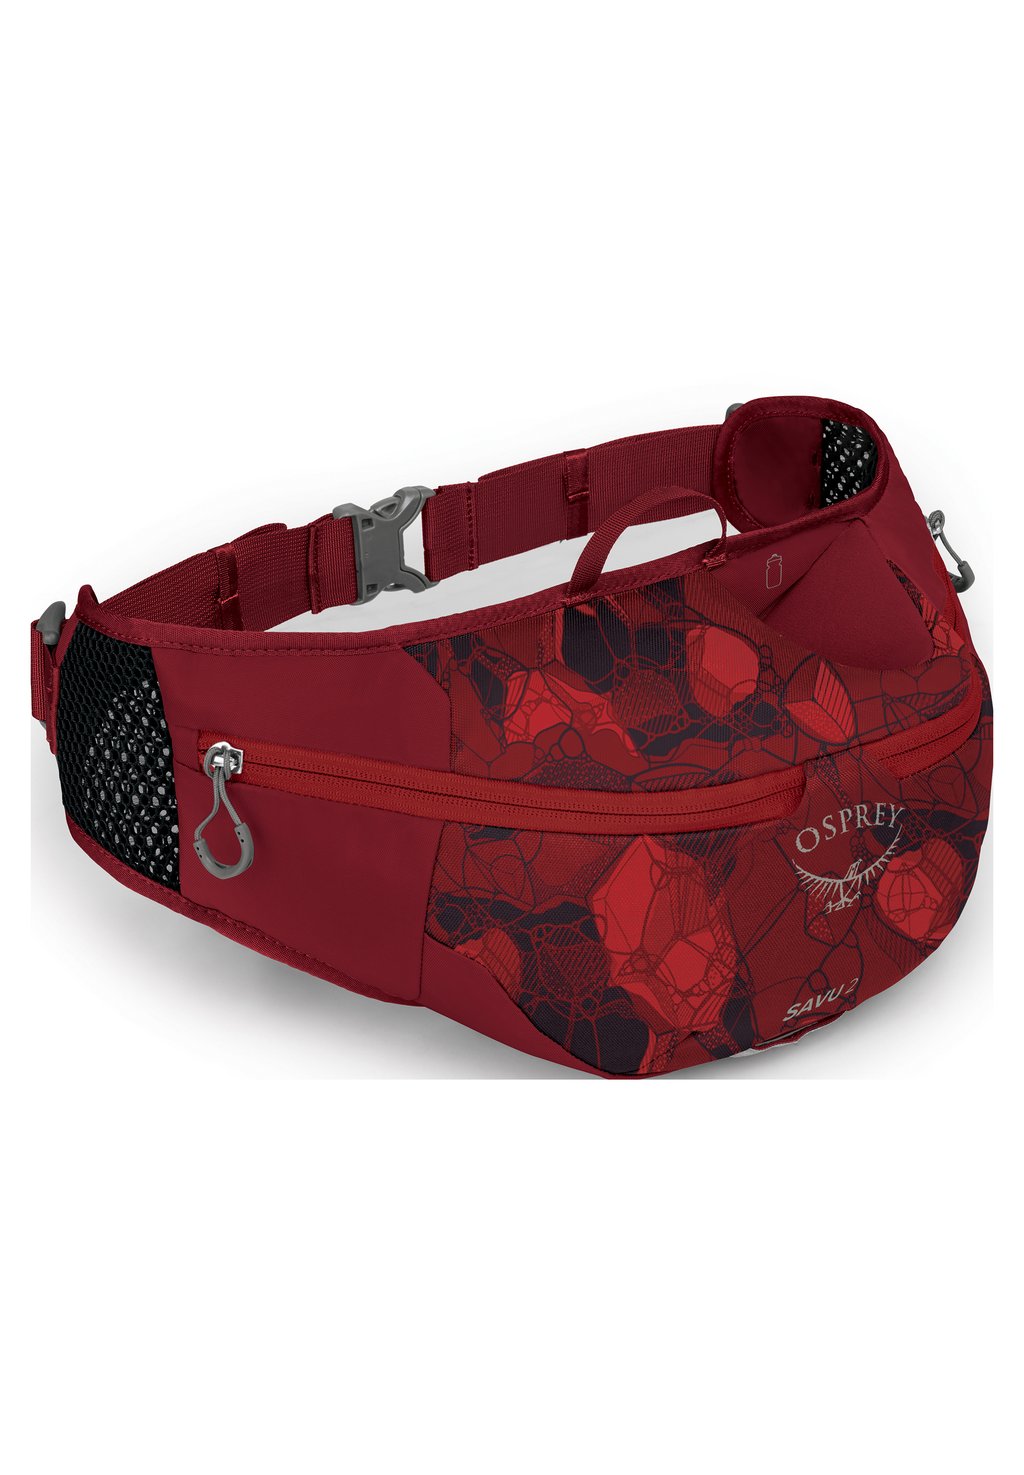 Поясная сумка Osprey, цвет claret red рюкзак ariel osprey цвет claret red